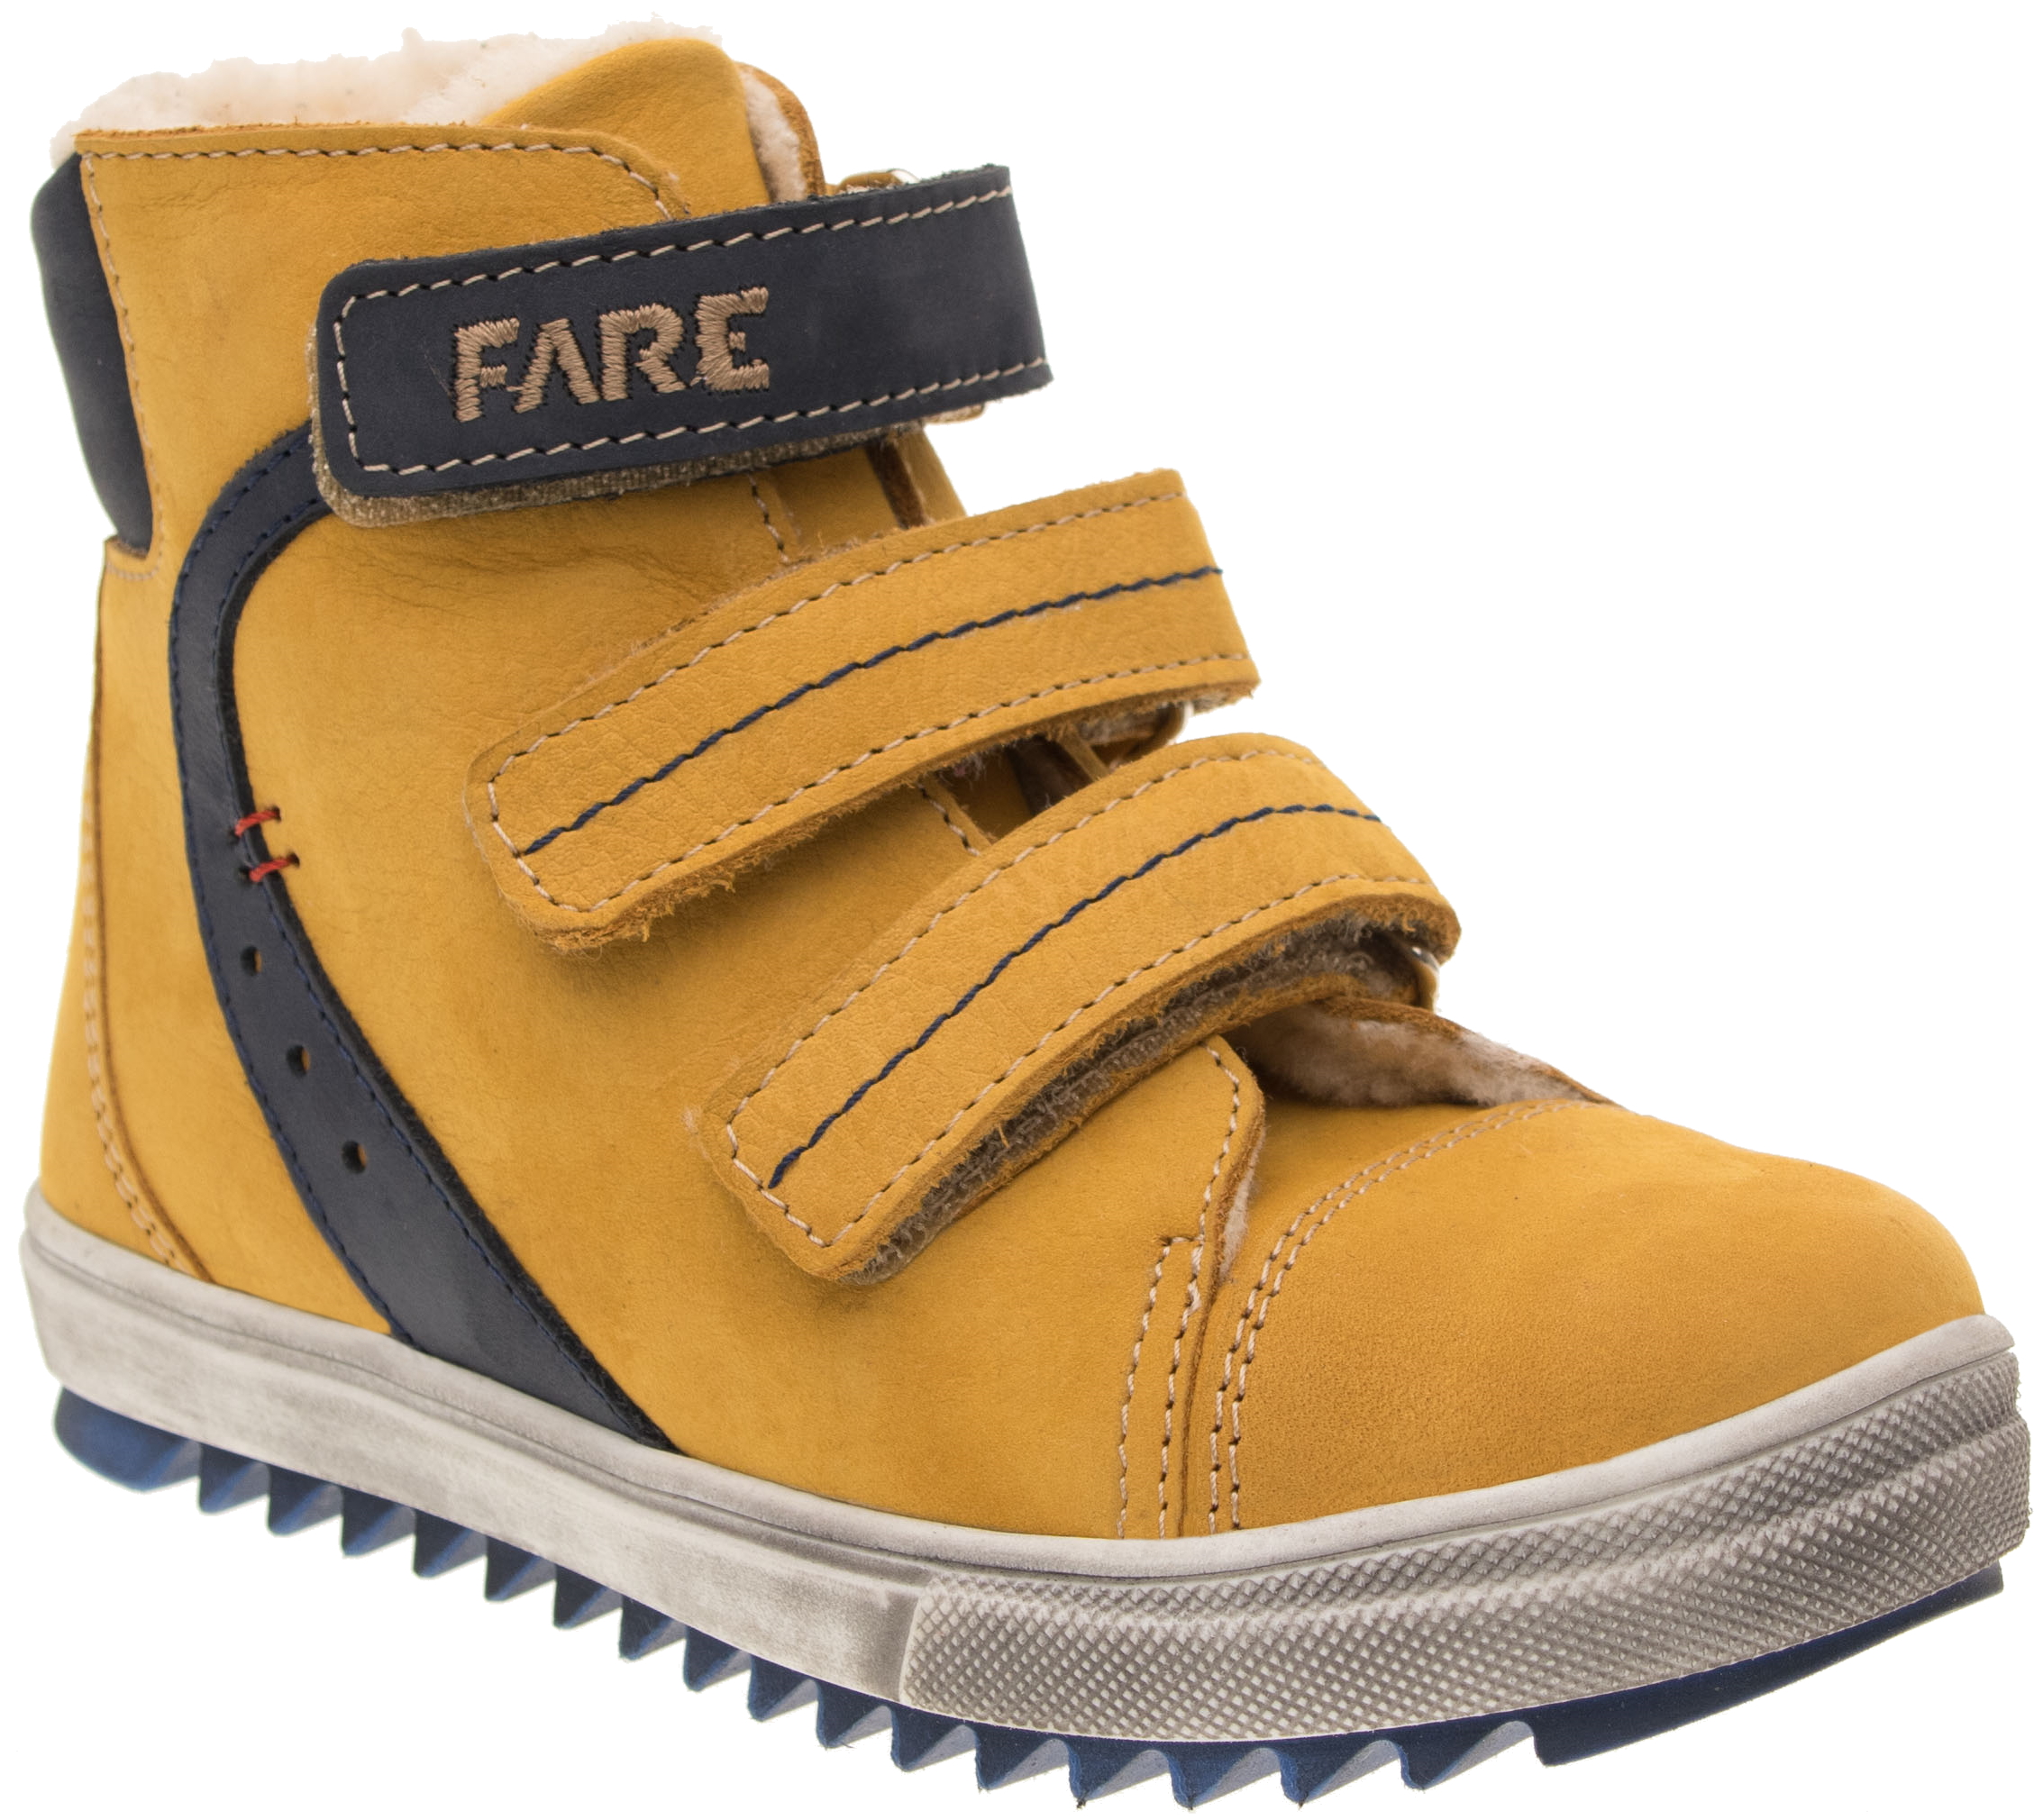 Dětské zimní kotníkové boty Fare 841281 žluté Velikost: 30 (EU)